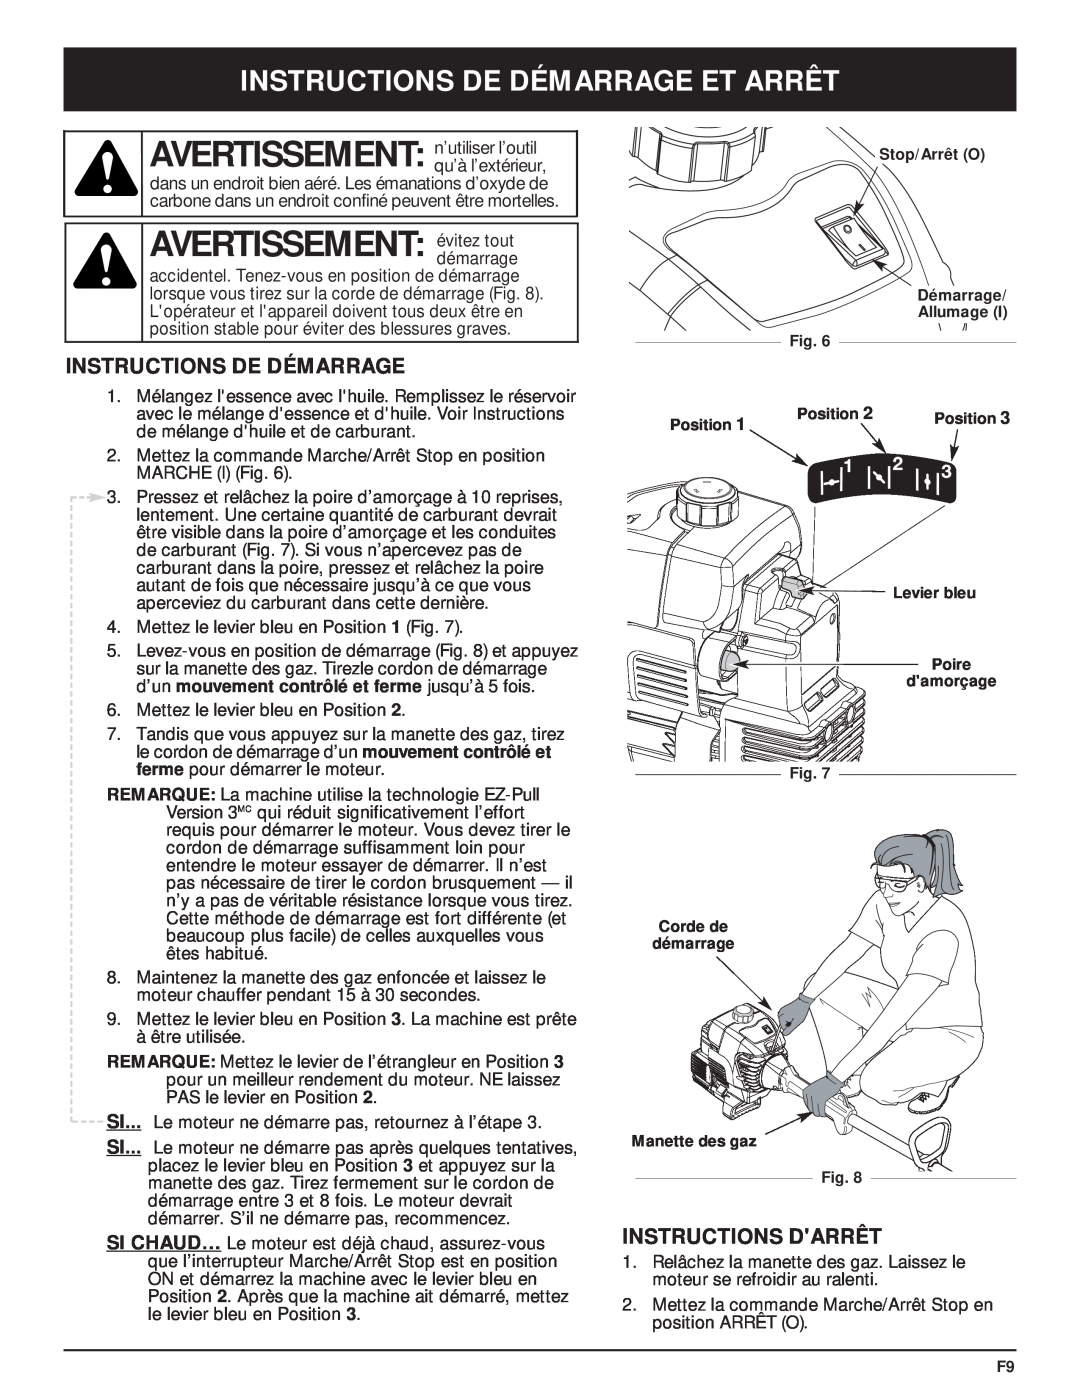 McCulloch MT705 manual AVERTISSEMENT évitez tout, Instructions De Démarrage Et Arrêt, Instructions Darrêt 